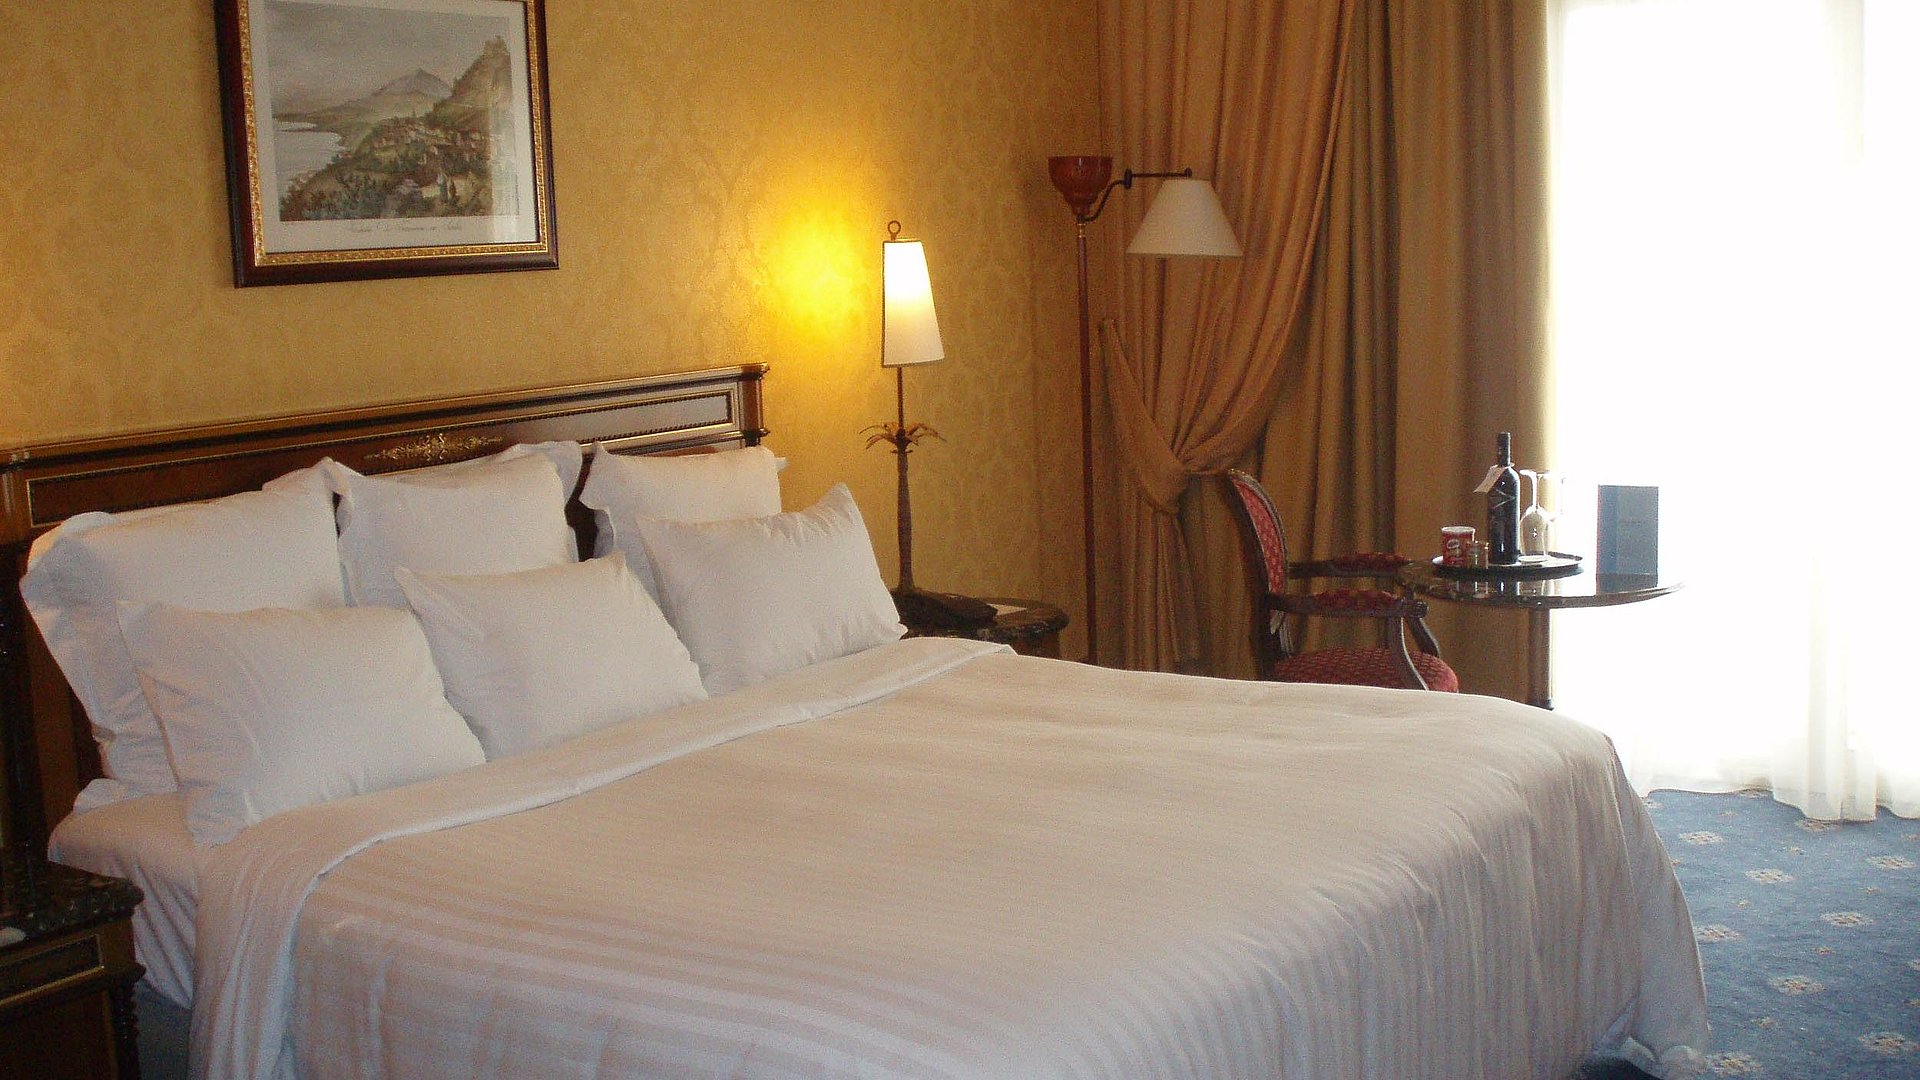 Pauschalangebote für Unterkünfte zu Feiertagen im Oberallgäu - sehr ordentliches Hotelzimmer mit großem Bett und warmer Nachtlampe wird durch weiße Gardinen durchleuchtet